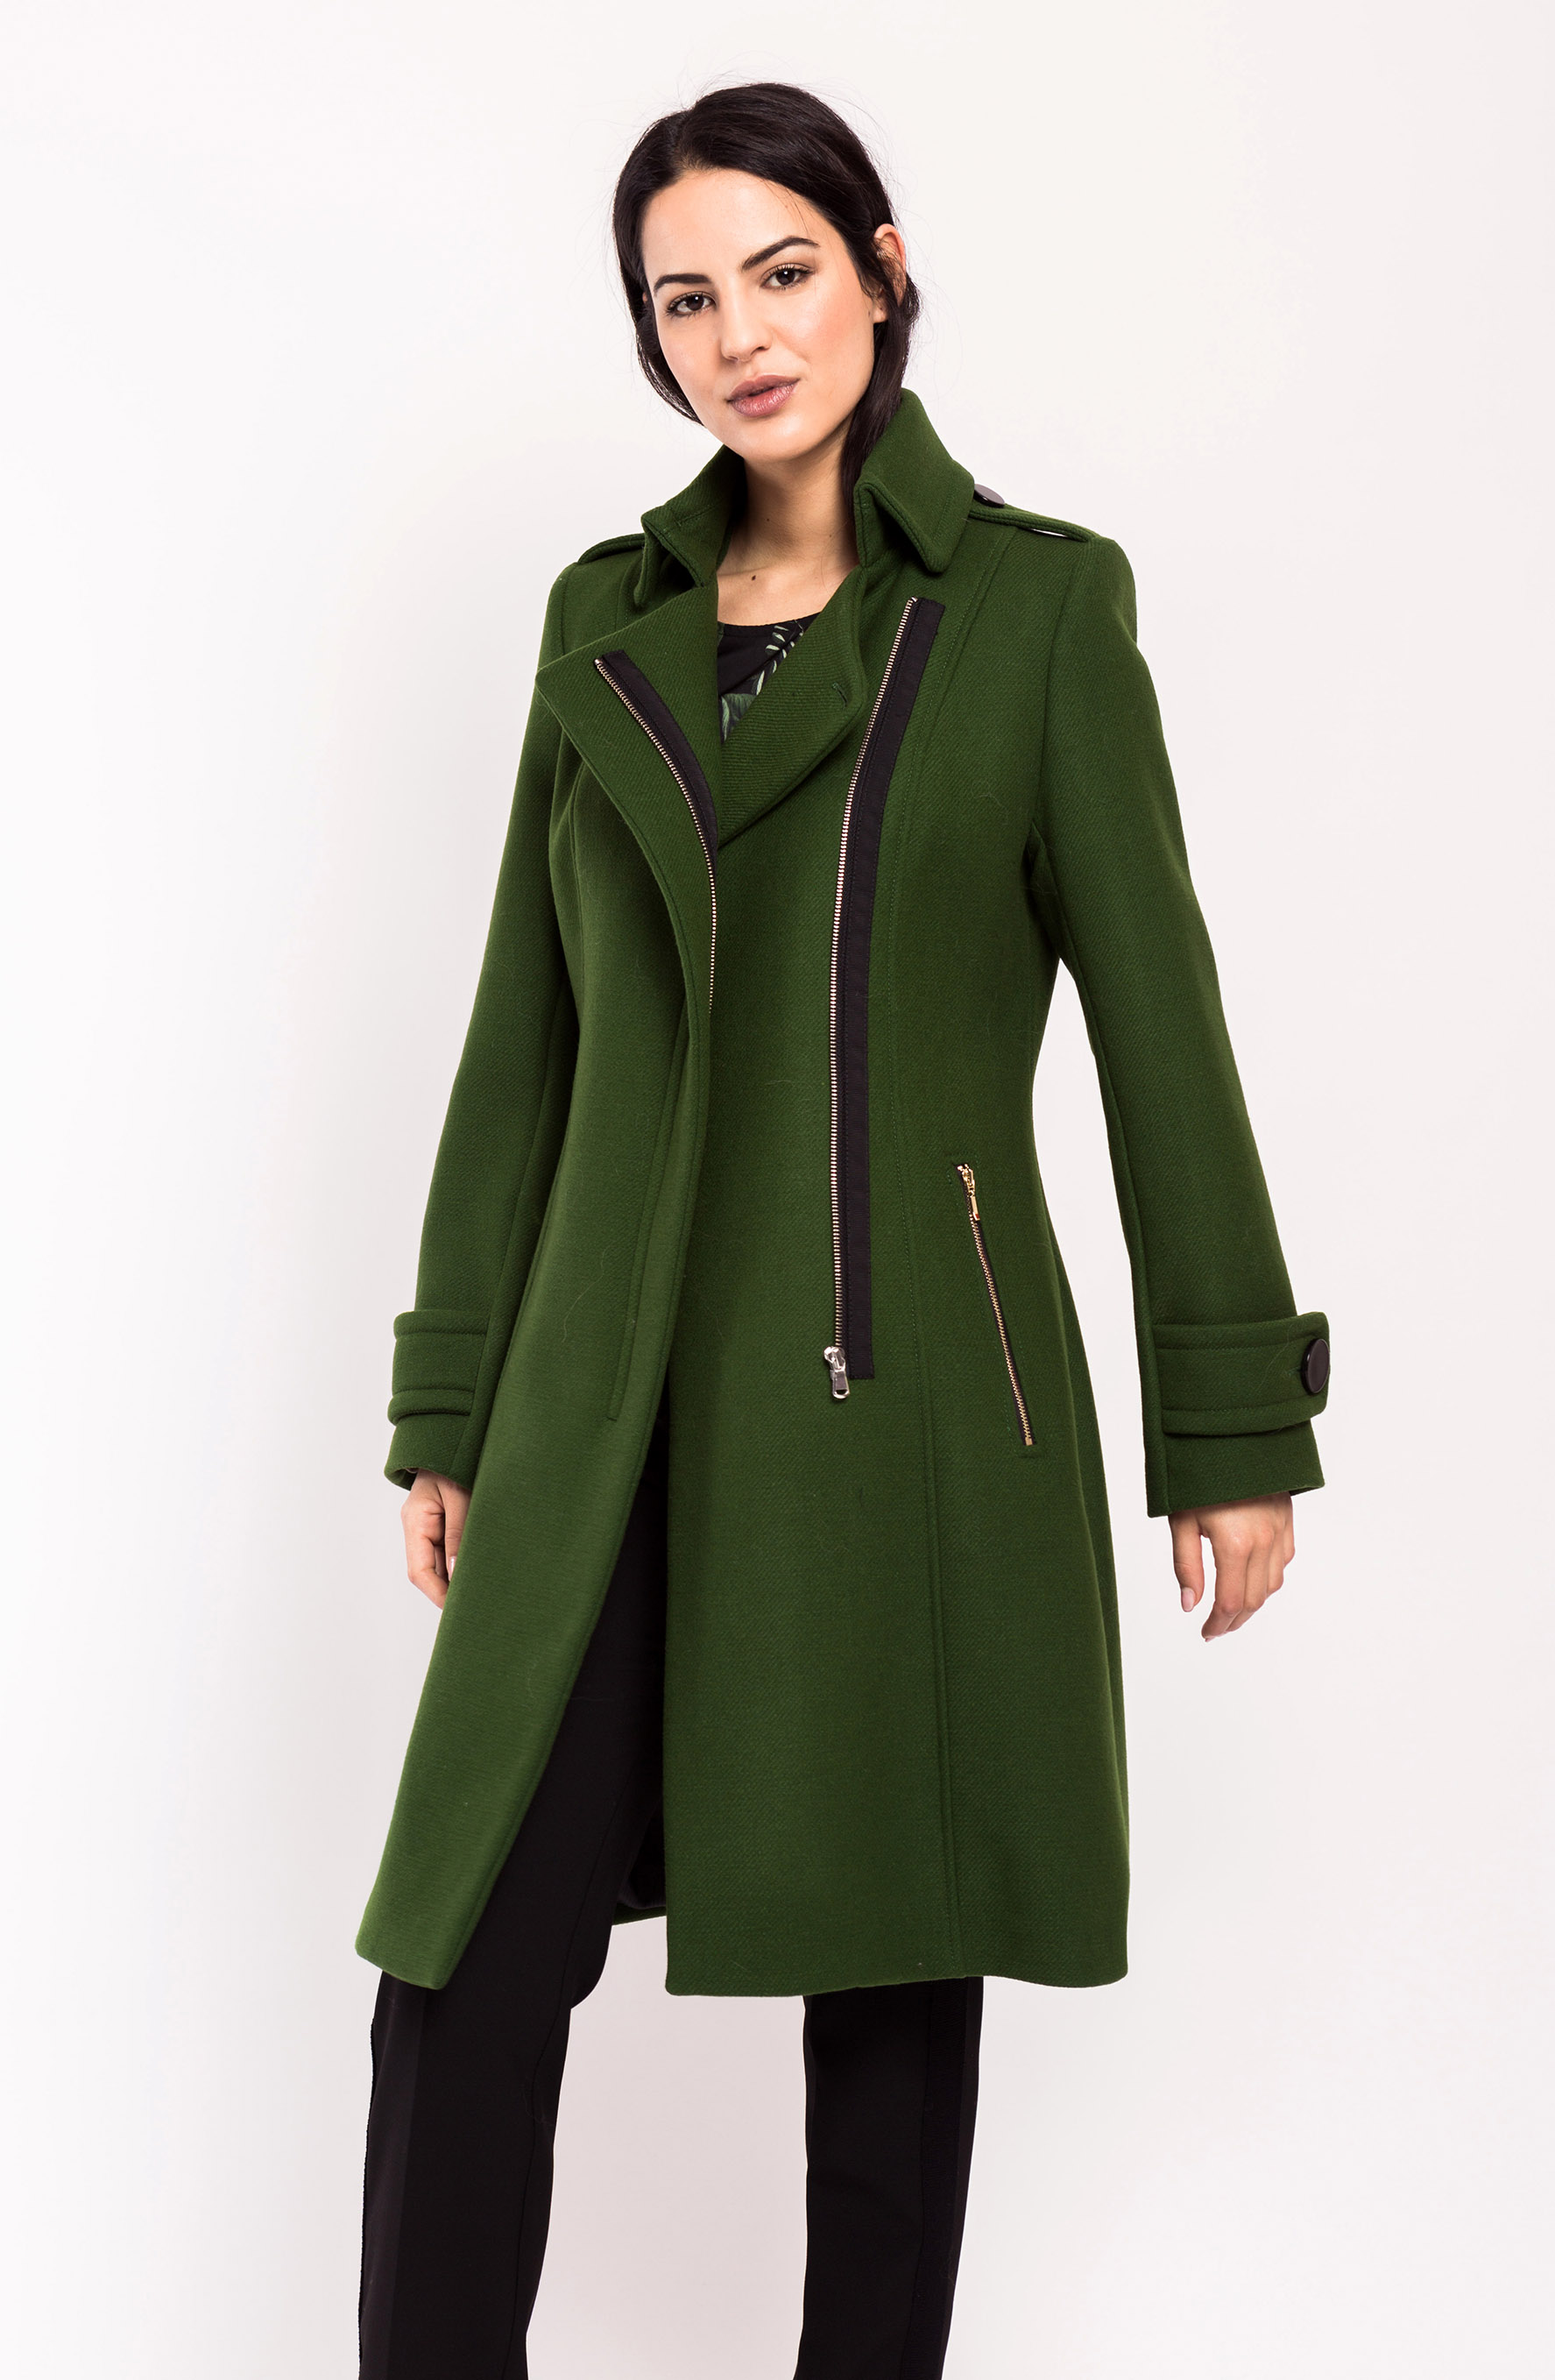 Wool coat in green